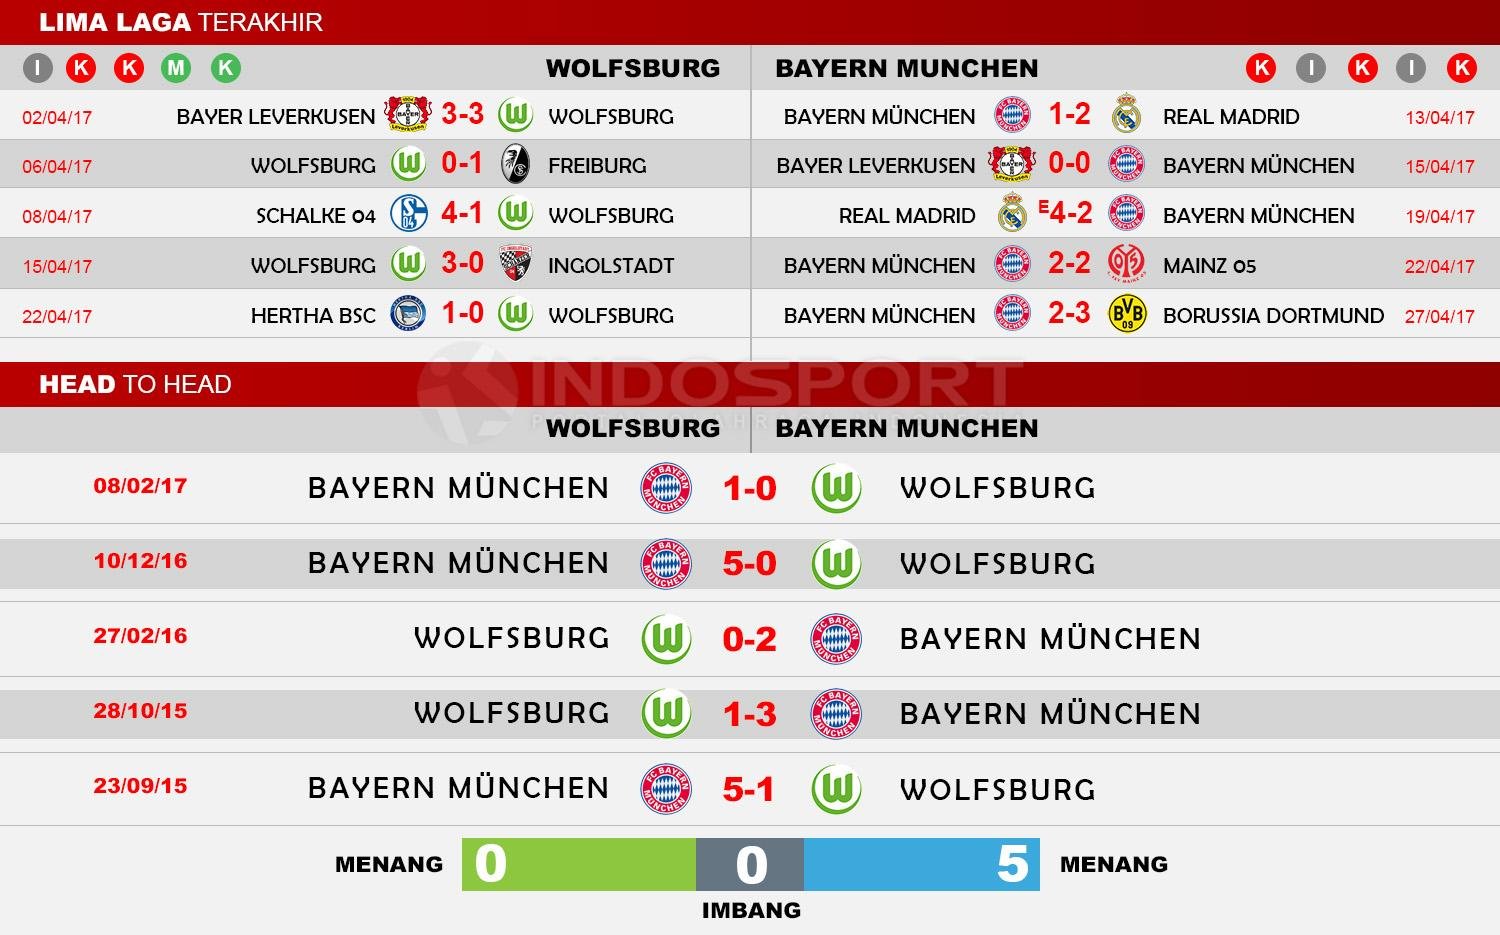 Head to Head Wolfsburg vs Bayern Munchen Copyright: Indosport/Soccerway